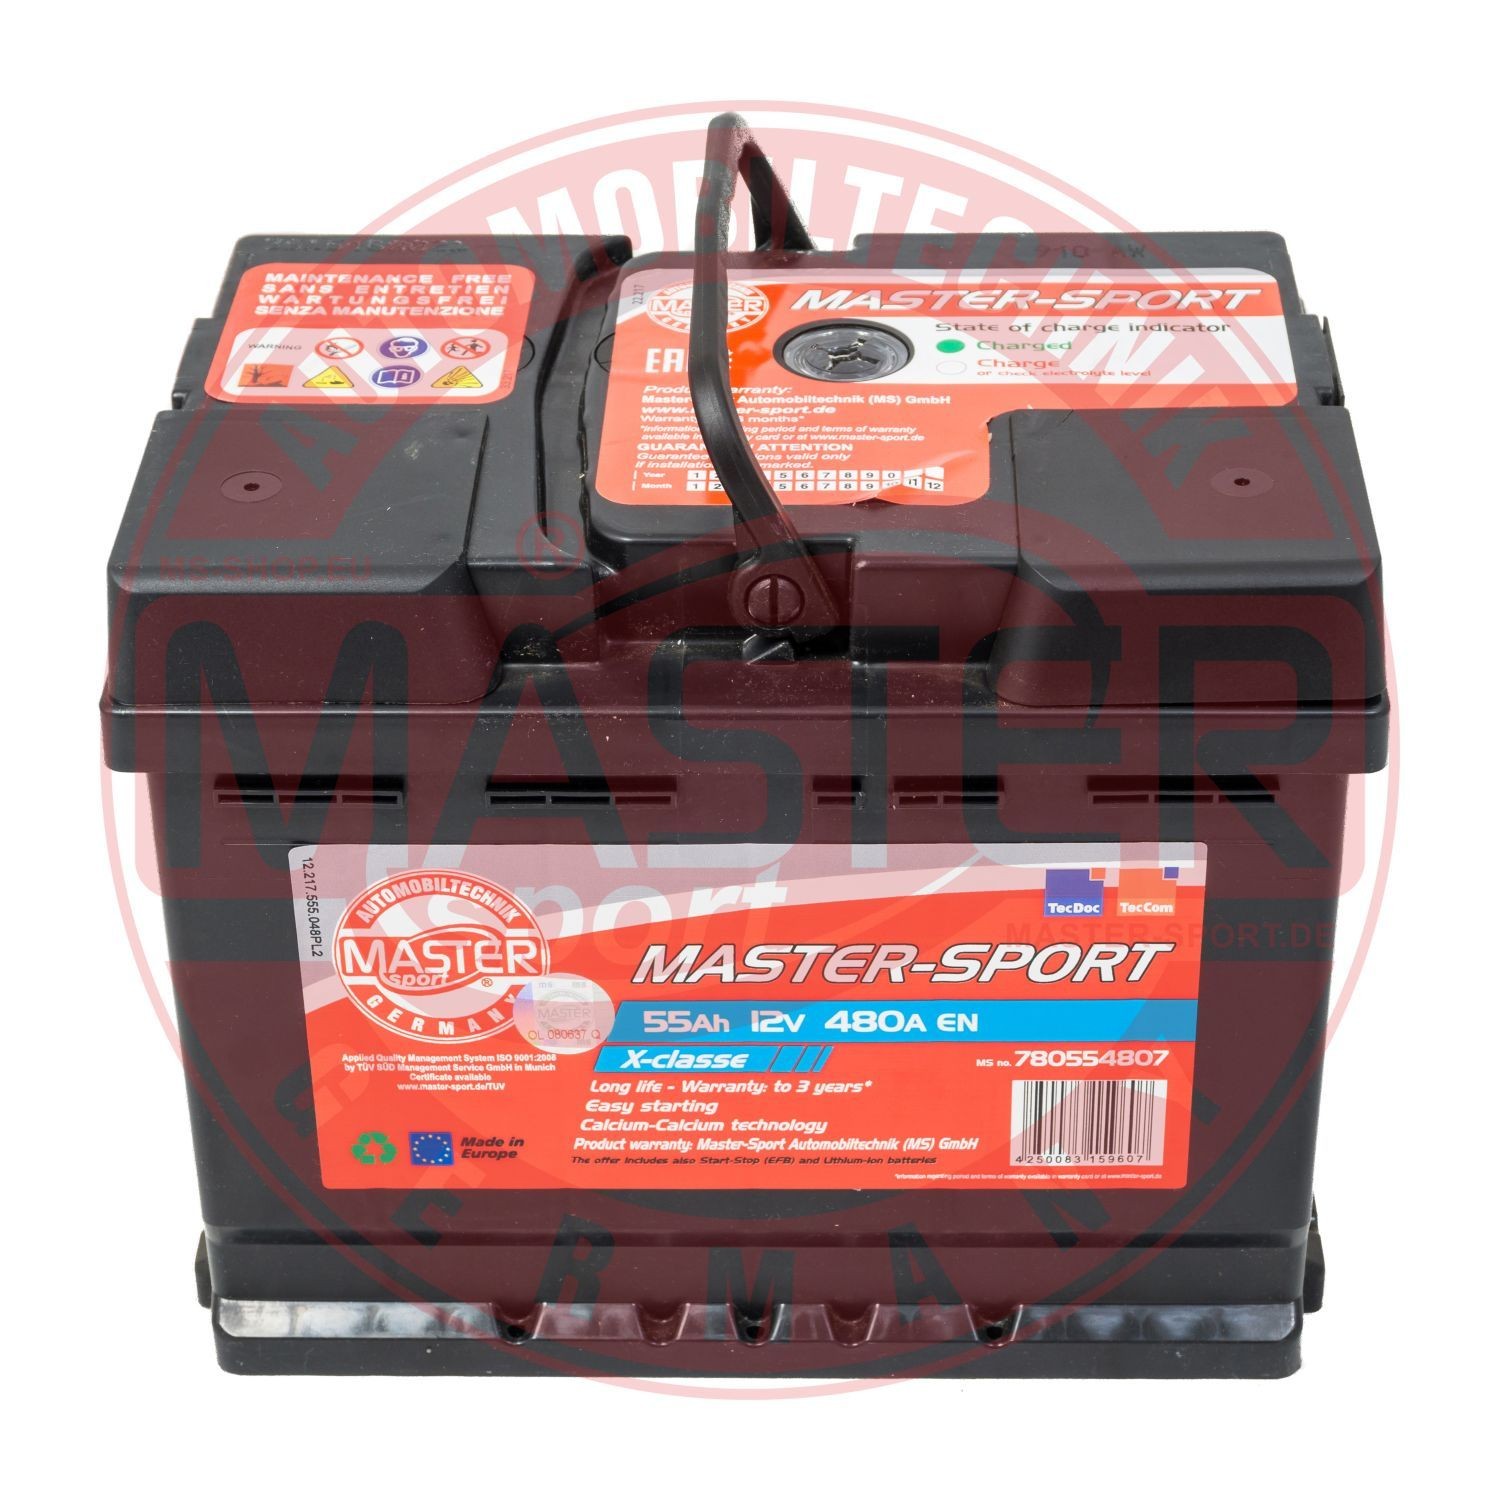 MASTER-SPORT 750554802 Battery E364046